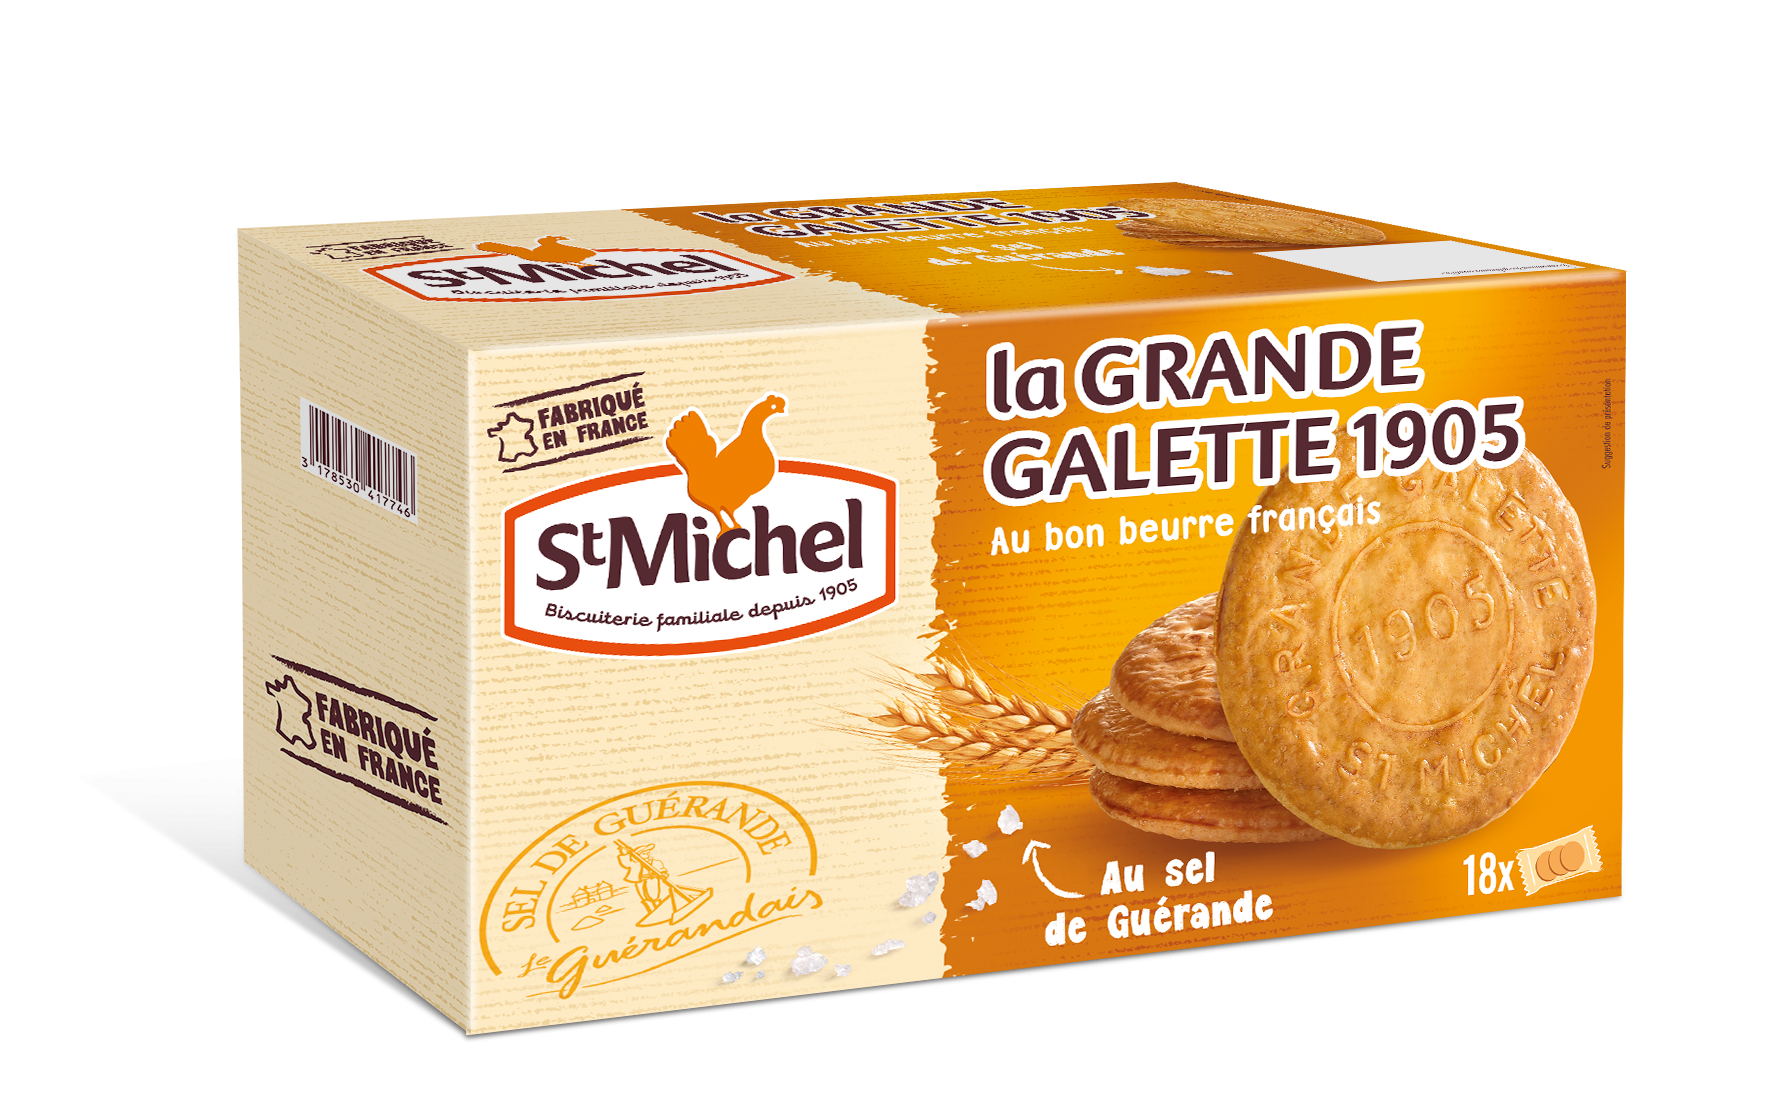 St Michel dévoile sa galette géante